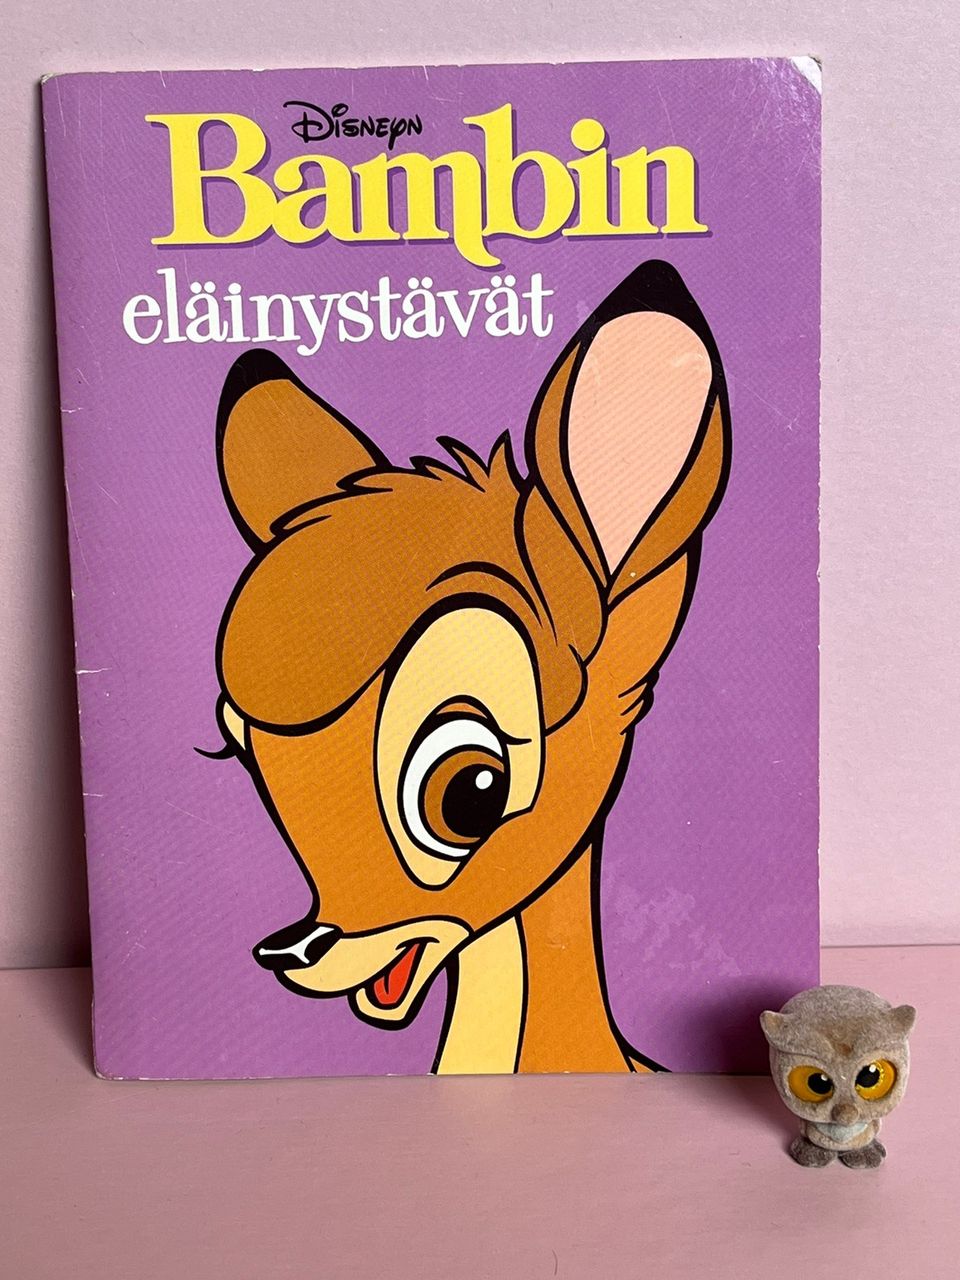 Disney Bambi -kirjanen ja pöllö -figuuri